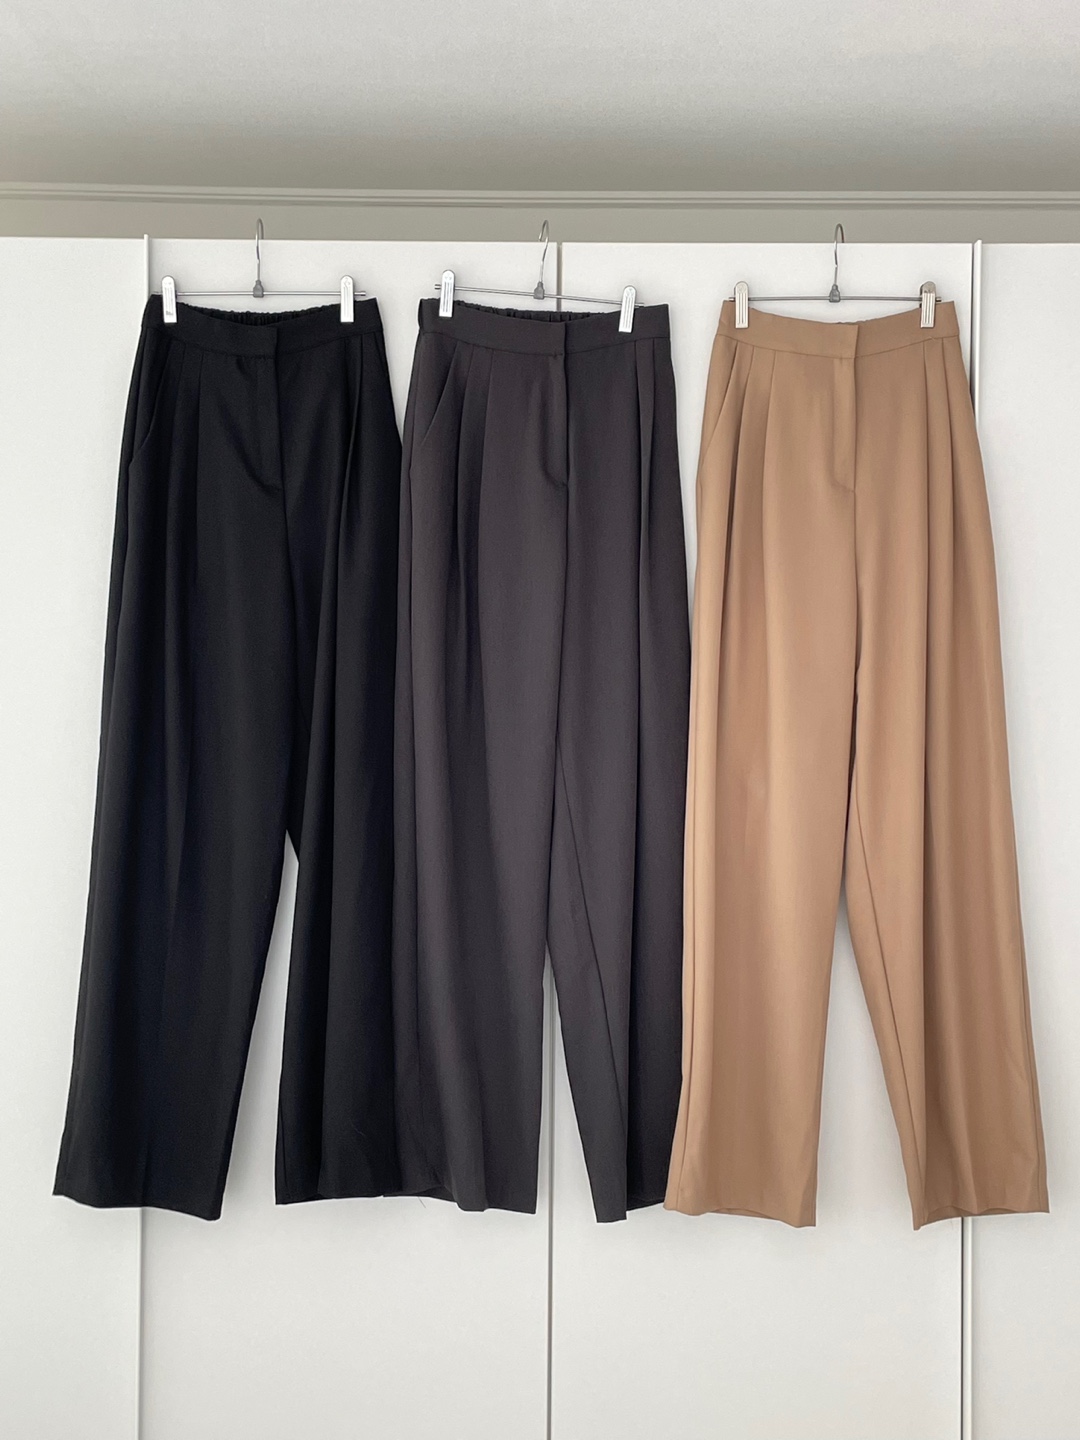 select) Autumn Daily Back Banding Slacks Pants (Black / Charcoal Gray / Beige)